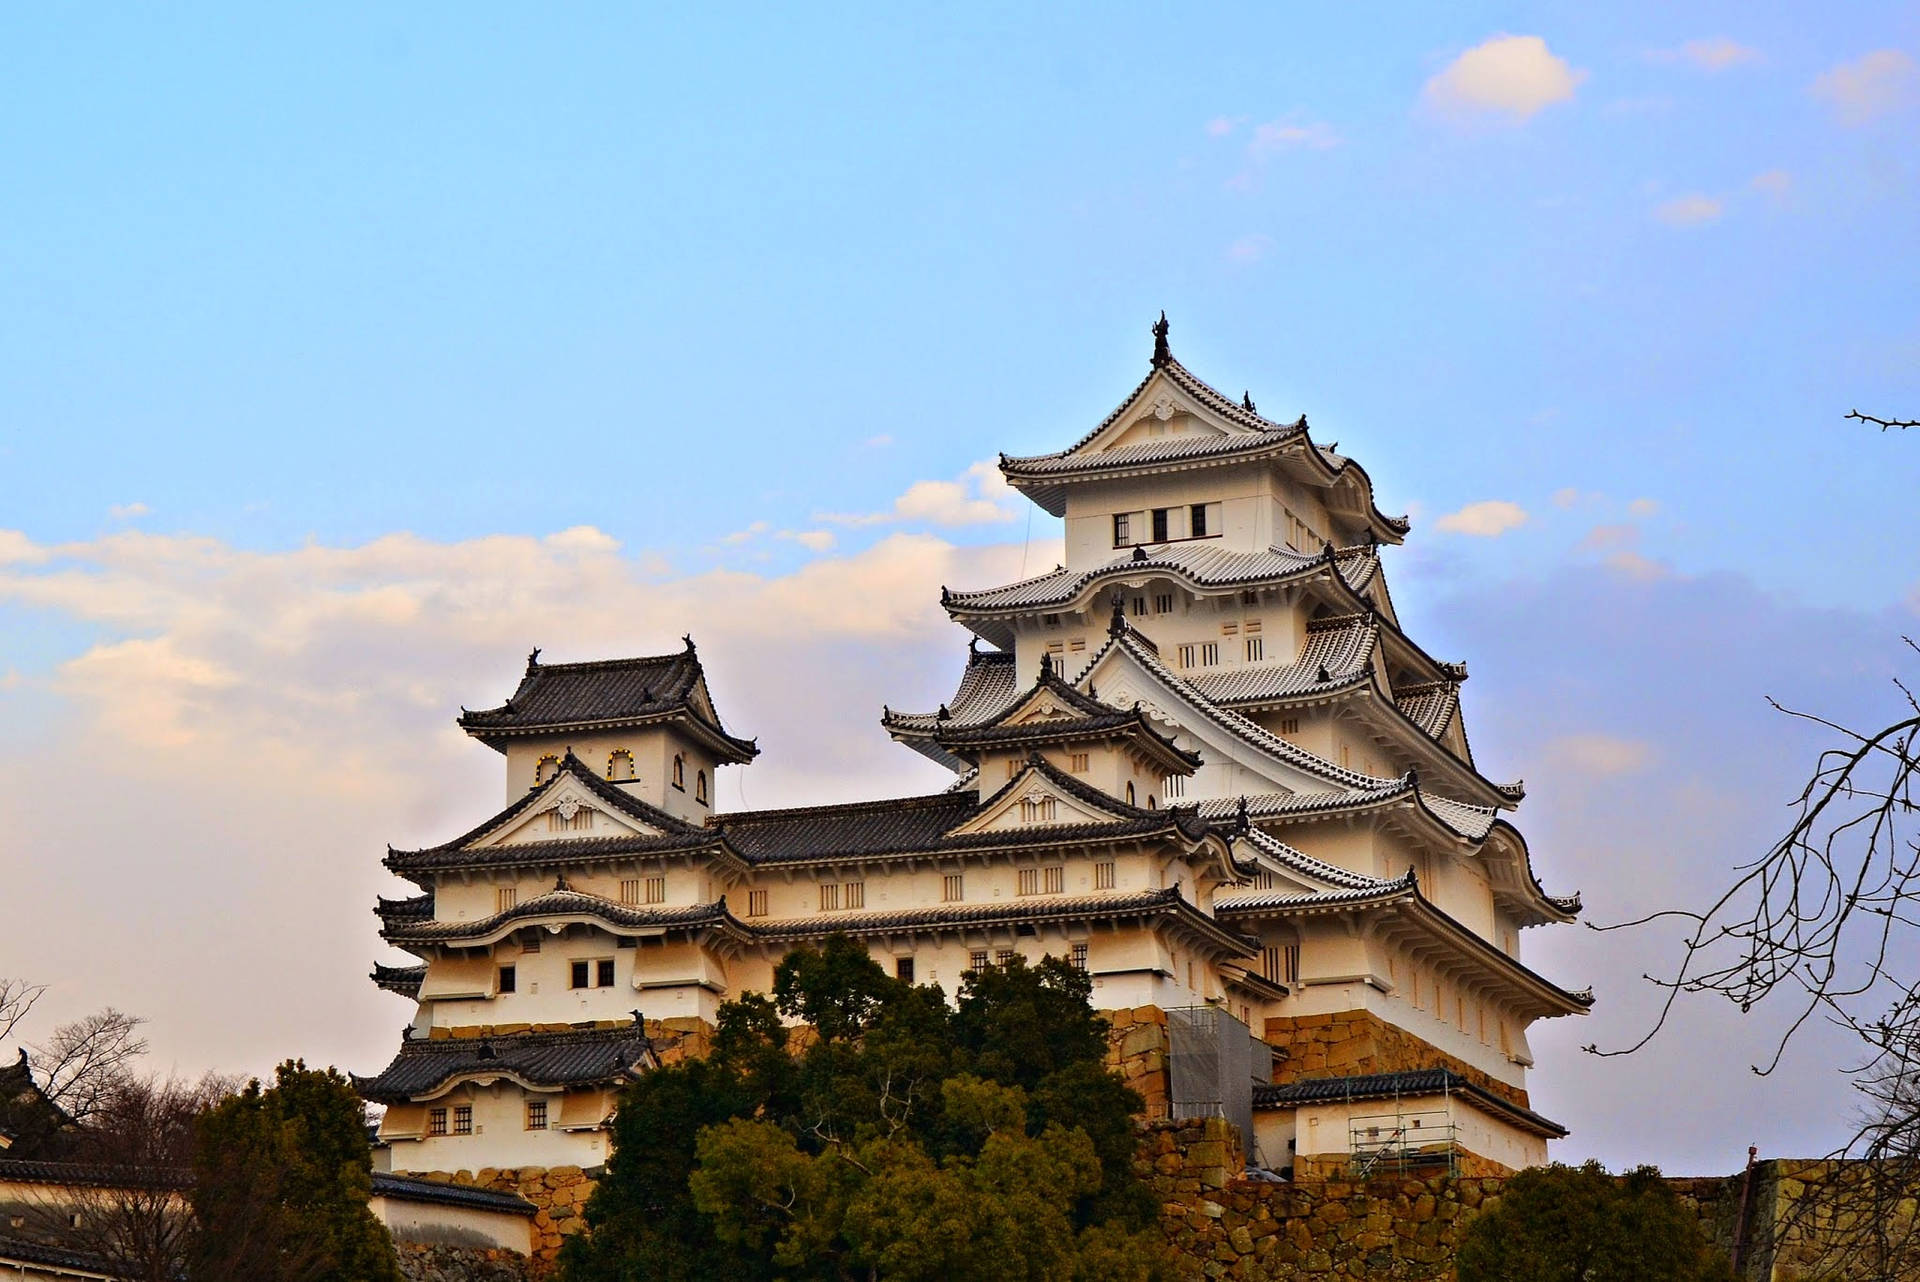 Iconic Himeji Castle